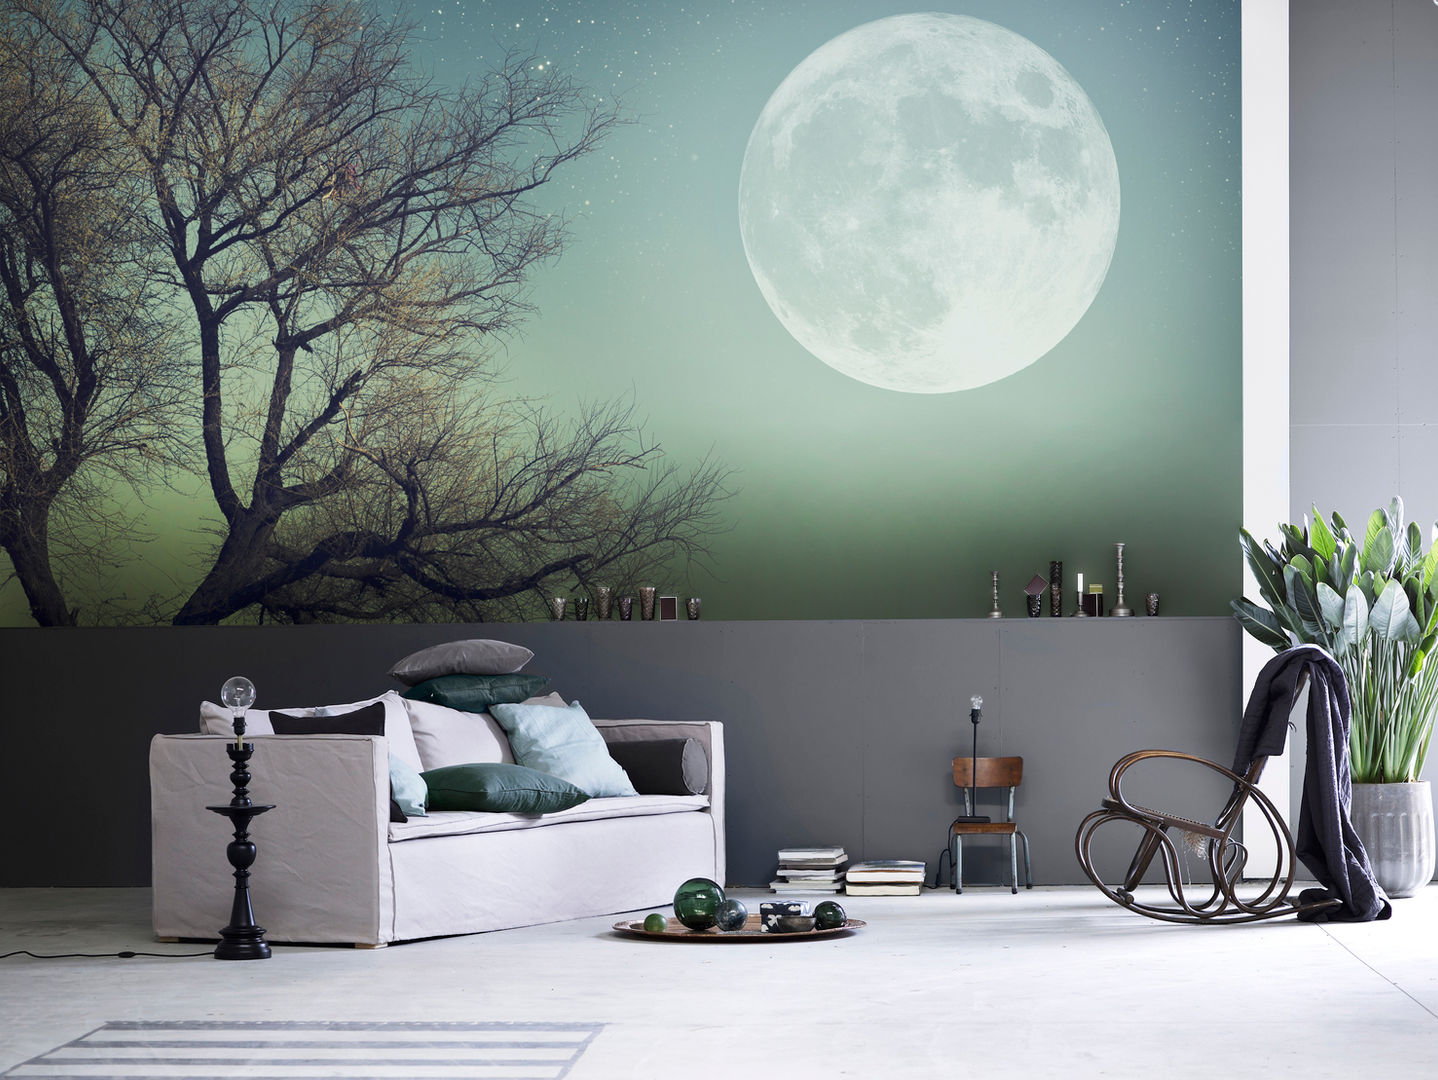 Full Moon Pixers Salas de estar minimalistas moon,full moon,wall mural,wallpaper,night